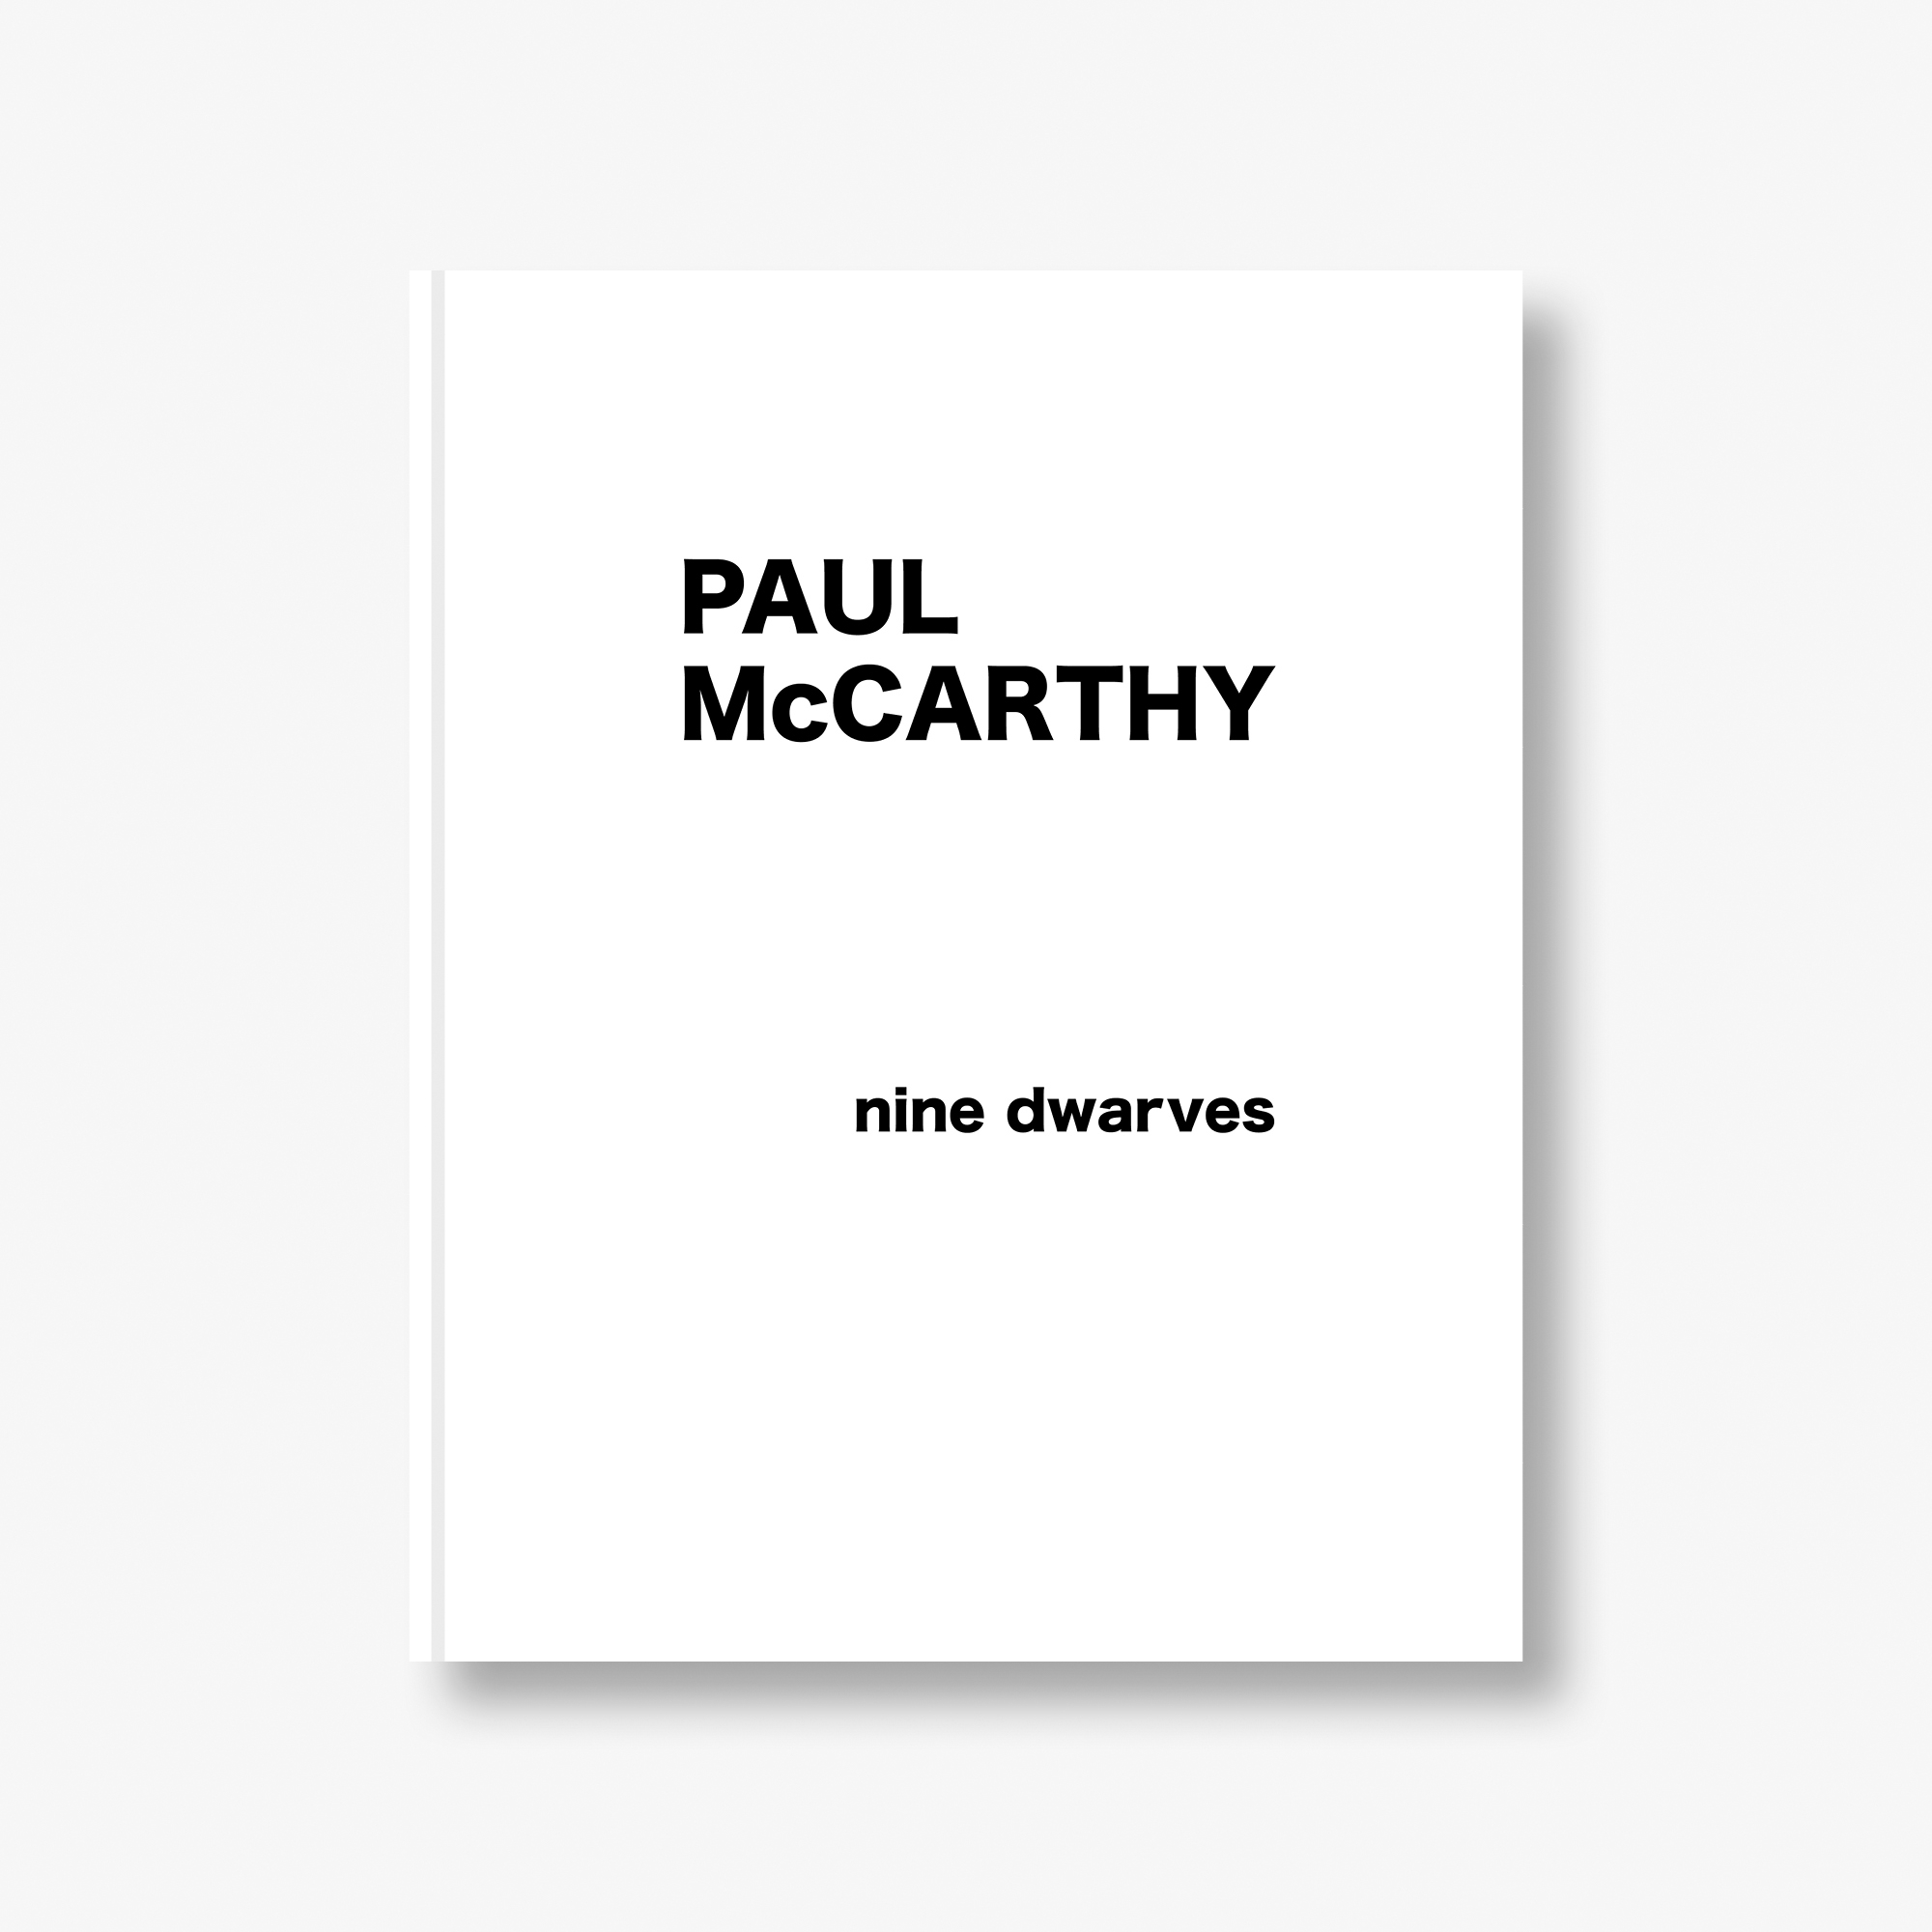 PAUL McCARTHY: nine dwarves